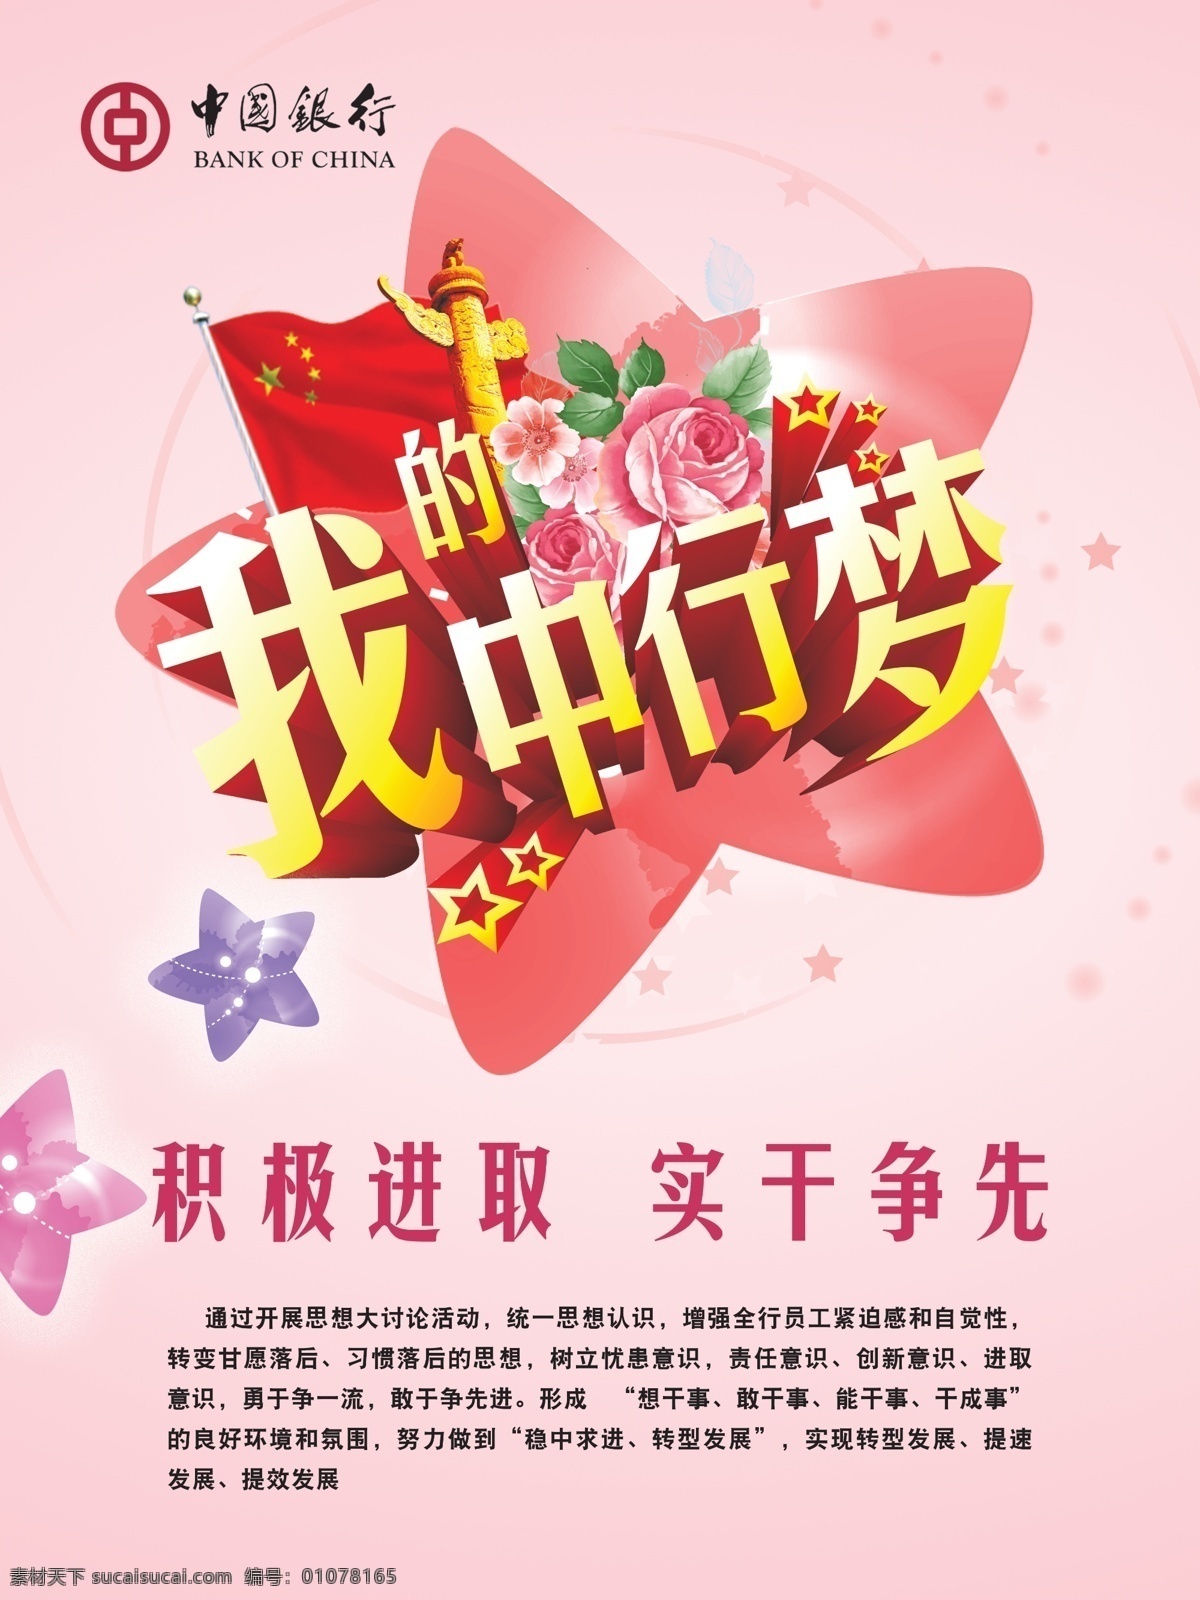 中国银行 中国 梦 广告 我的中行梦 华表 中国旗 花朵 字体 海报 星星 花 粉色背景 广告设计模板 分层 红色